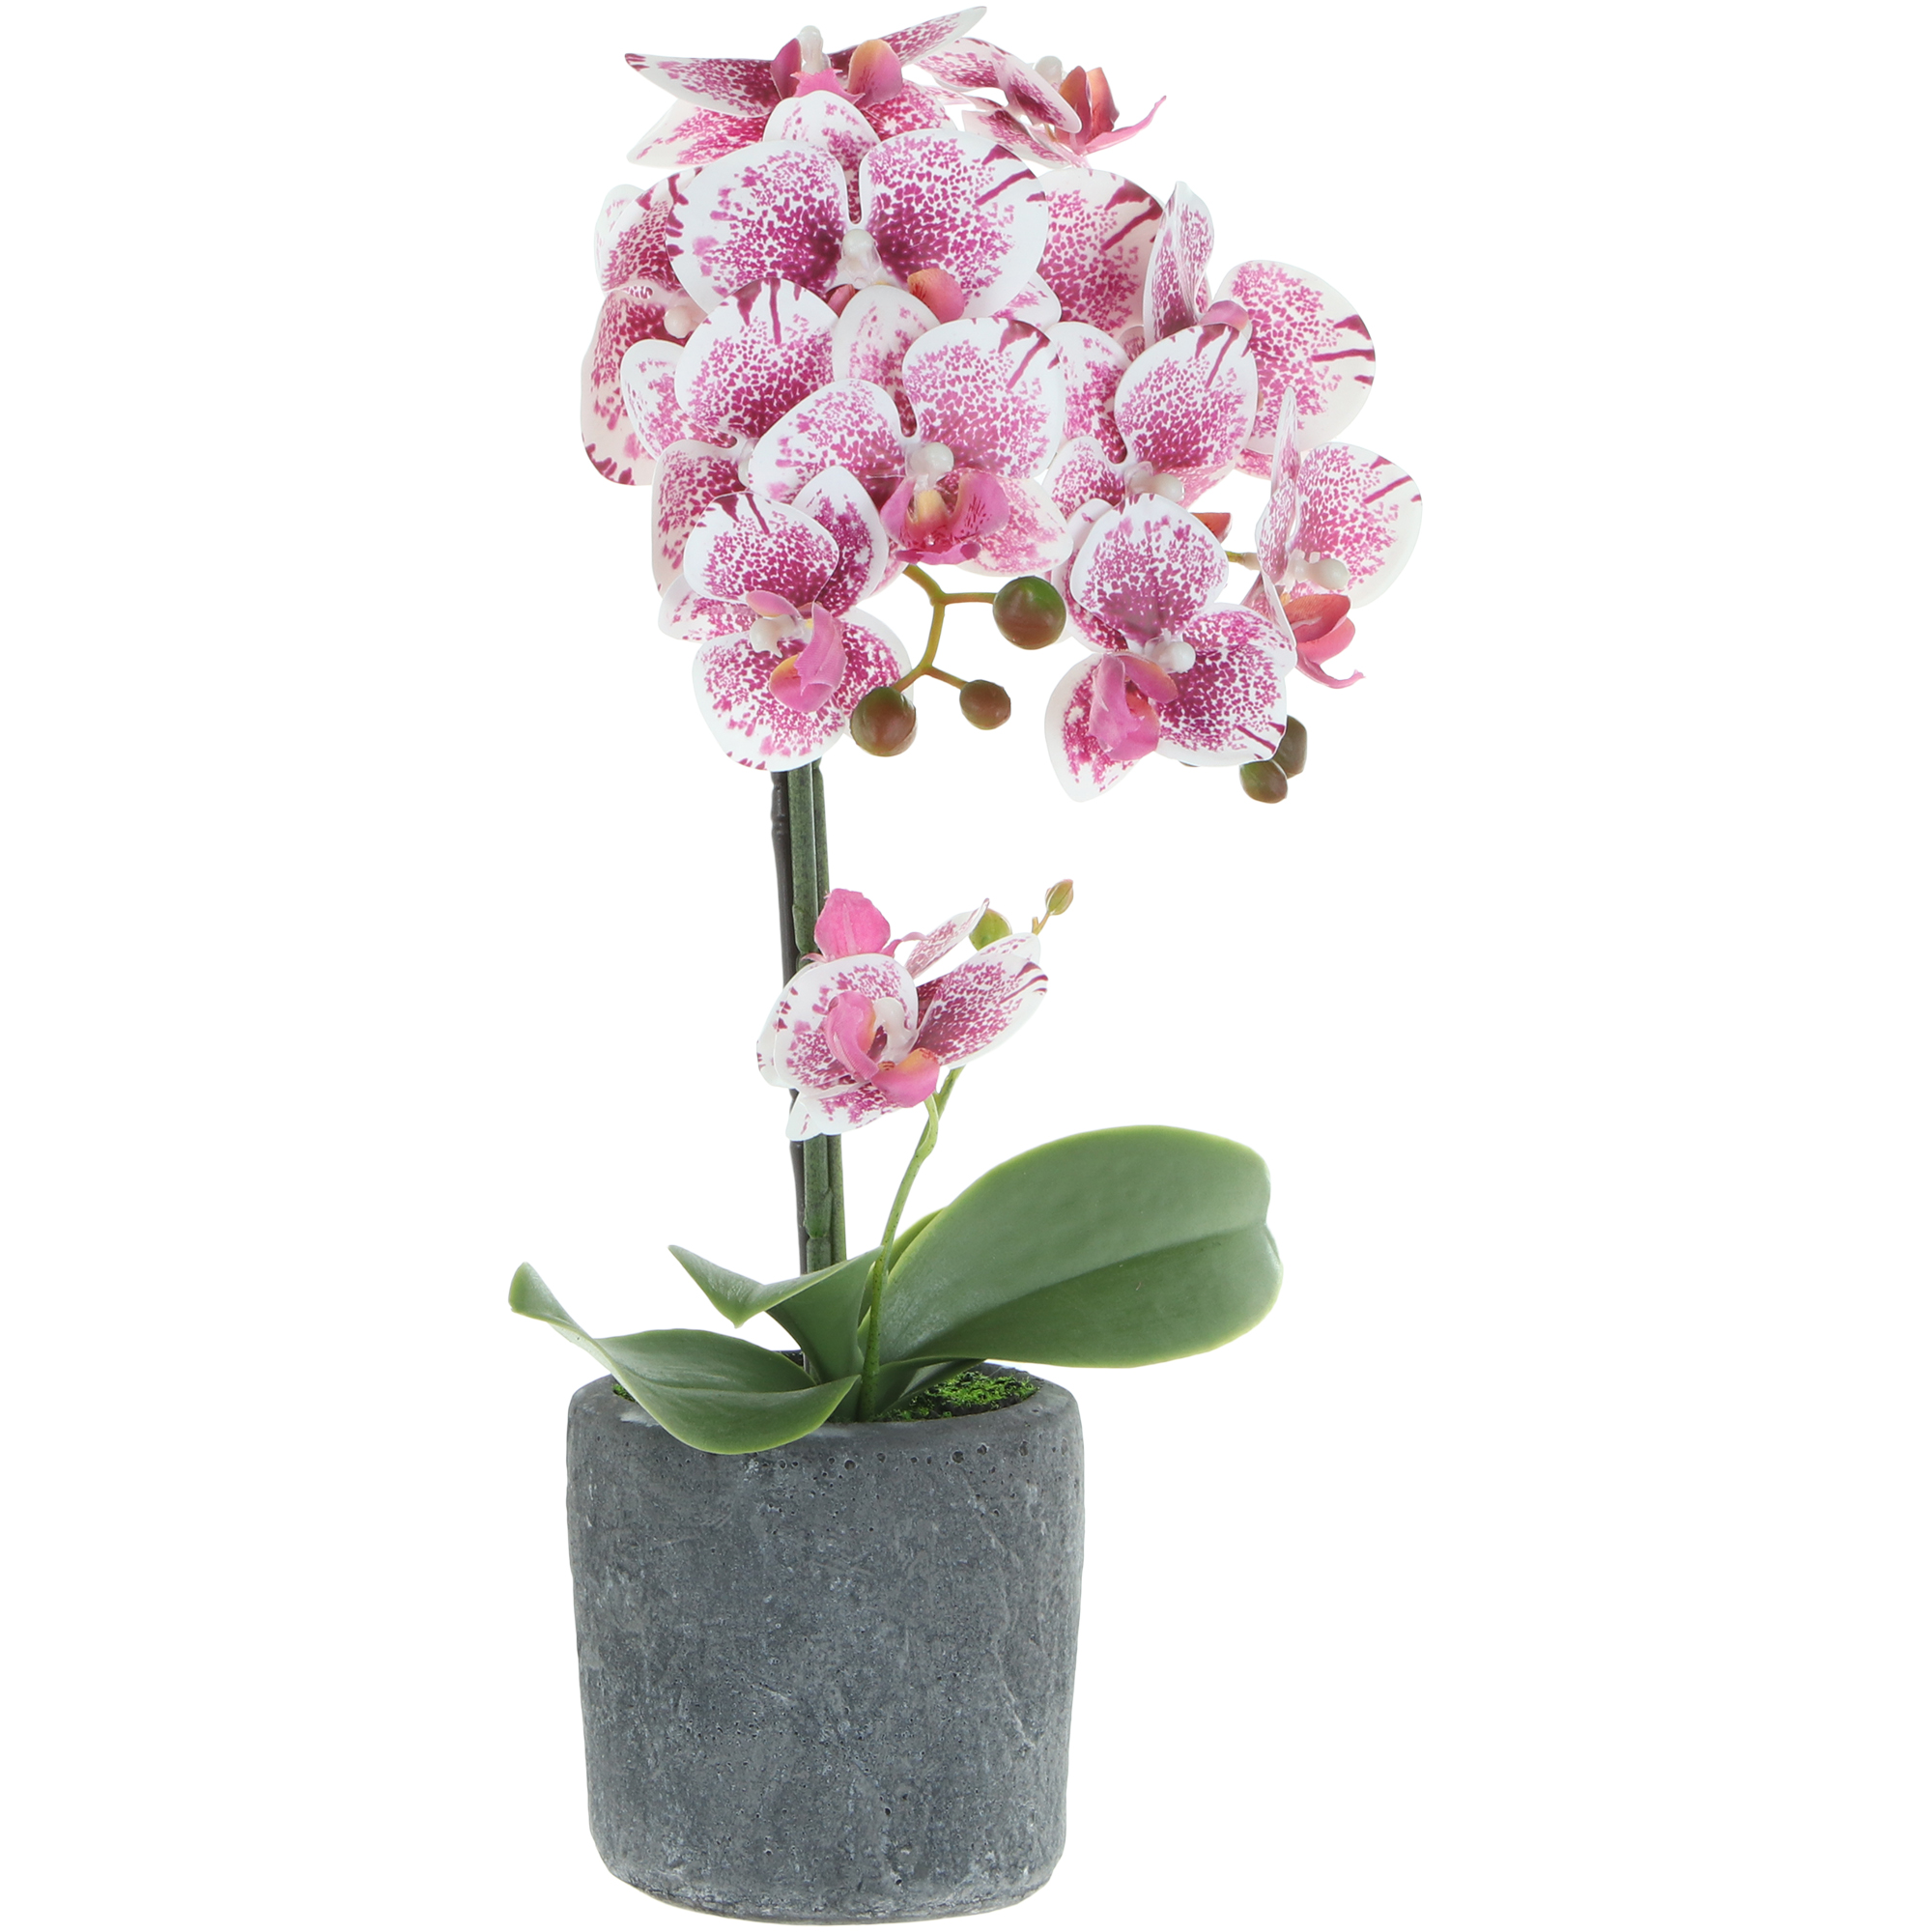 Цветок искусственный в горшке Fuzhou Light орхидея бело-розовая, 3 цвета 42 см ок искусственный fuzhou light в горшке орхидея тигровая 62 см